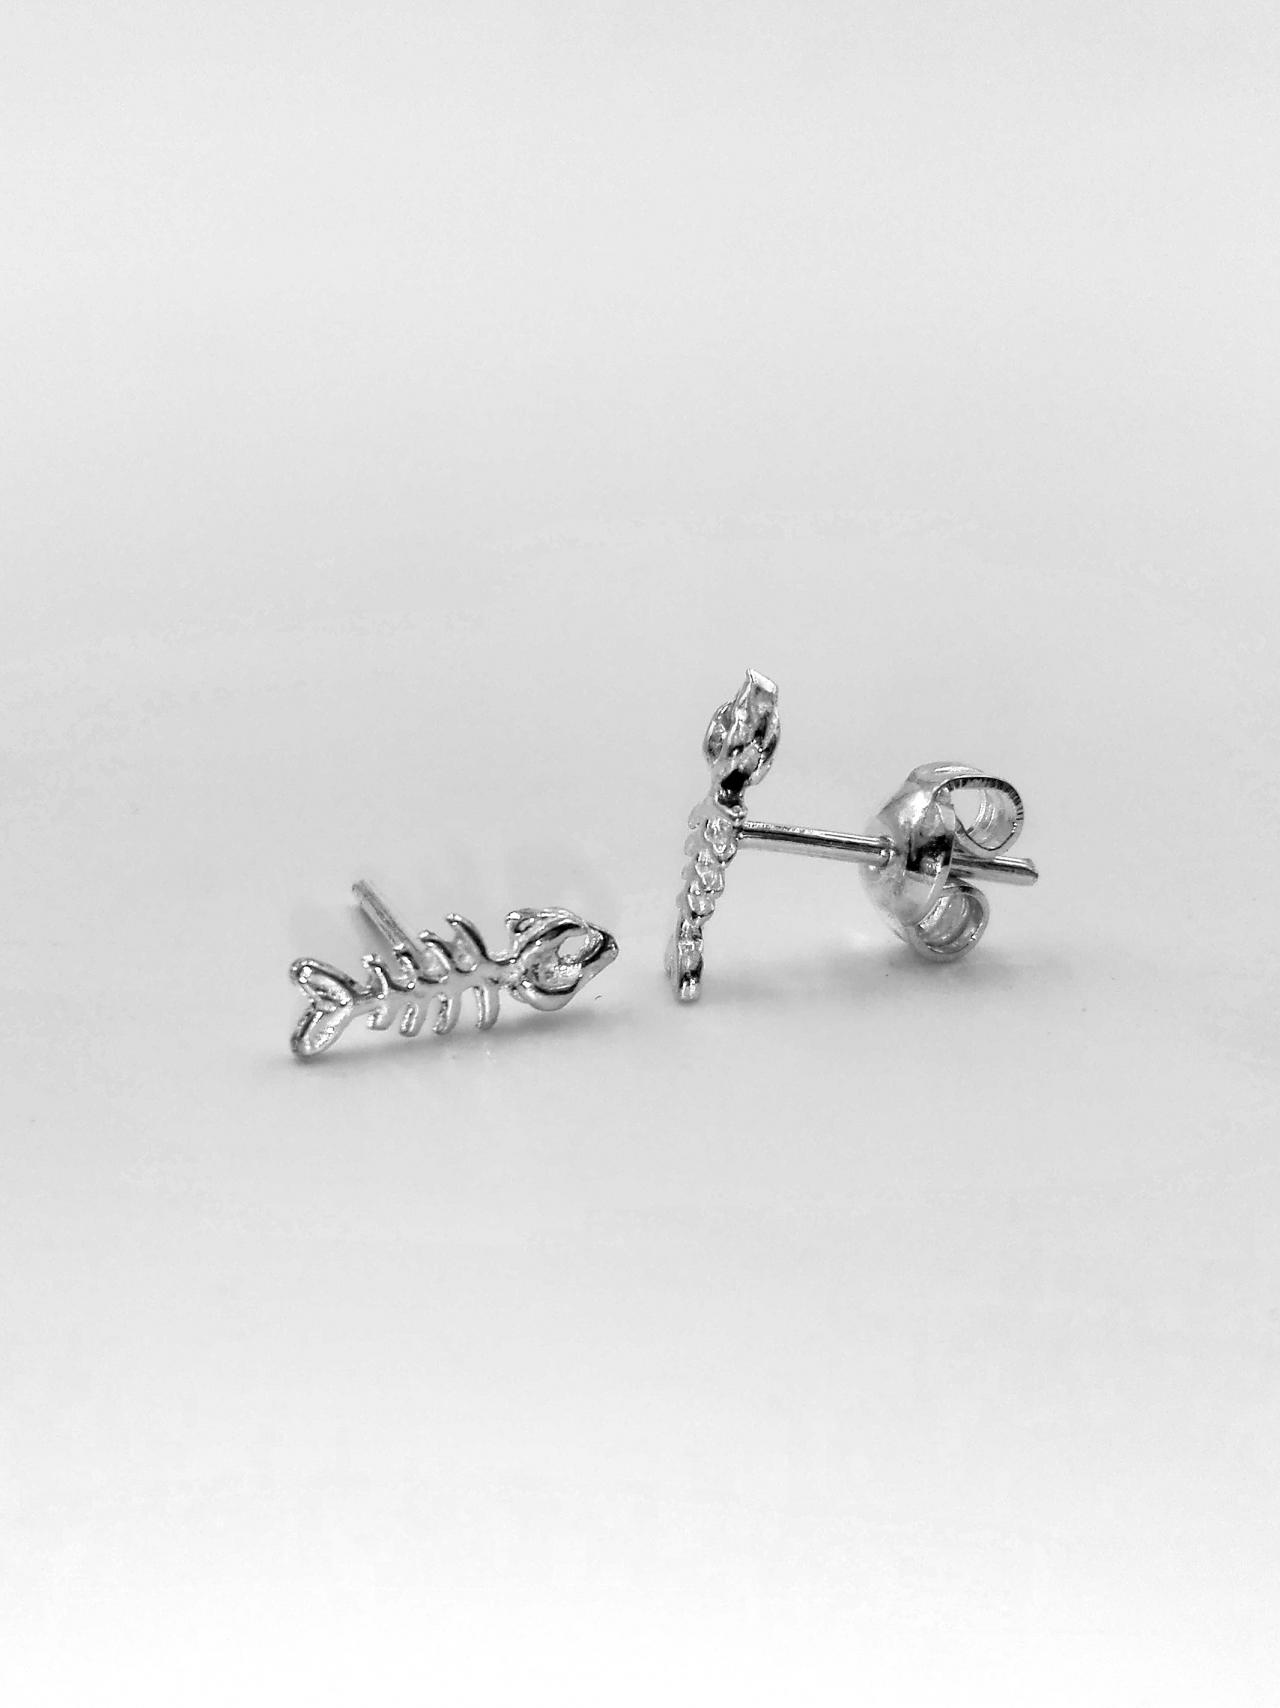 Sterling Silver Fishbone Earrings Stud Earrings Women Silver Jewelry Gift For Her Silver Earrings For Women Gift Tiny Fish Earrings